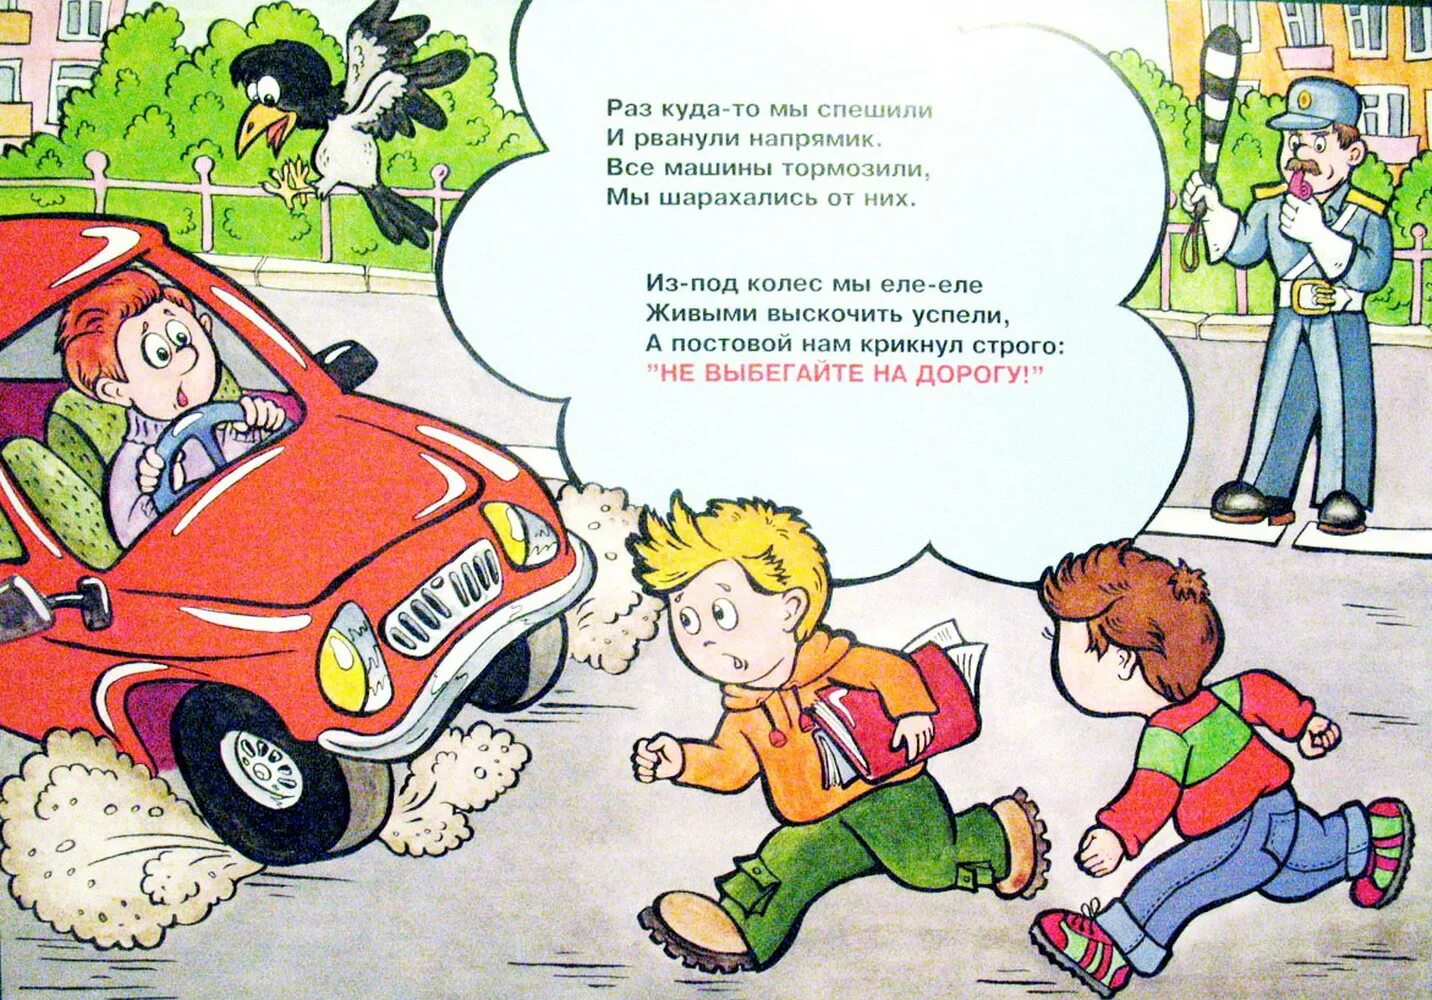 ПДД картинки для детей. Опасные ситуации на дороге. Опасные ситуации на дорогах для детей. Стих про ДТП для детей.